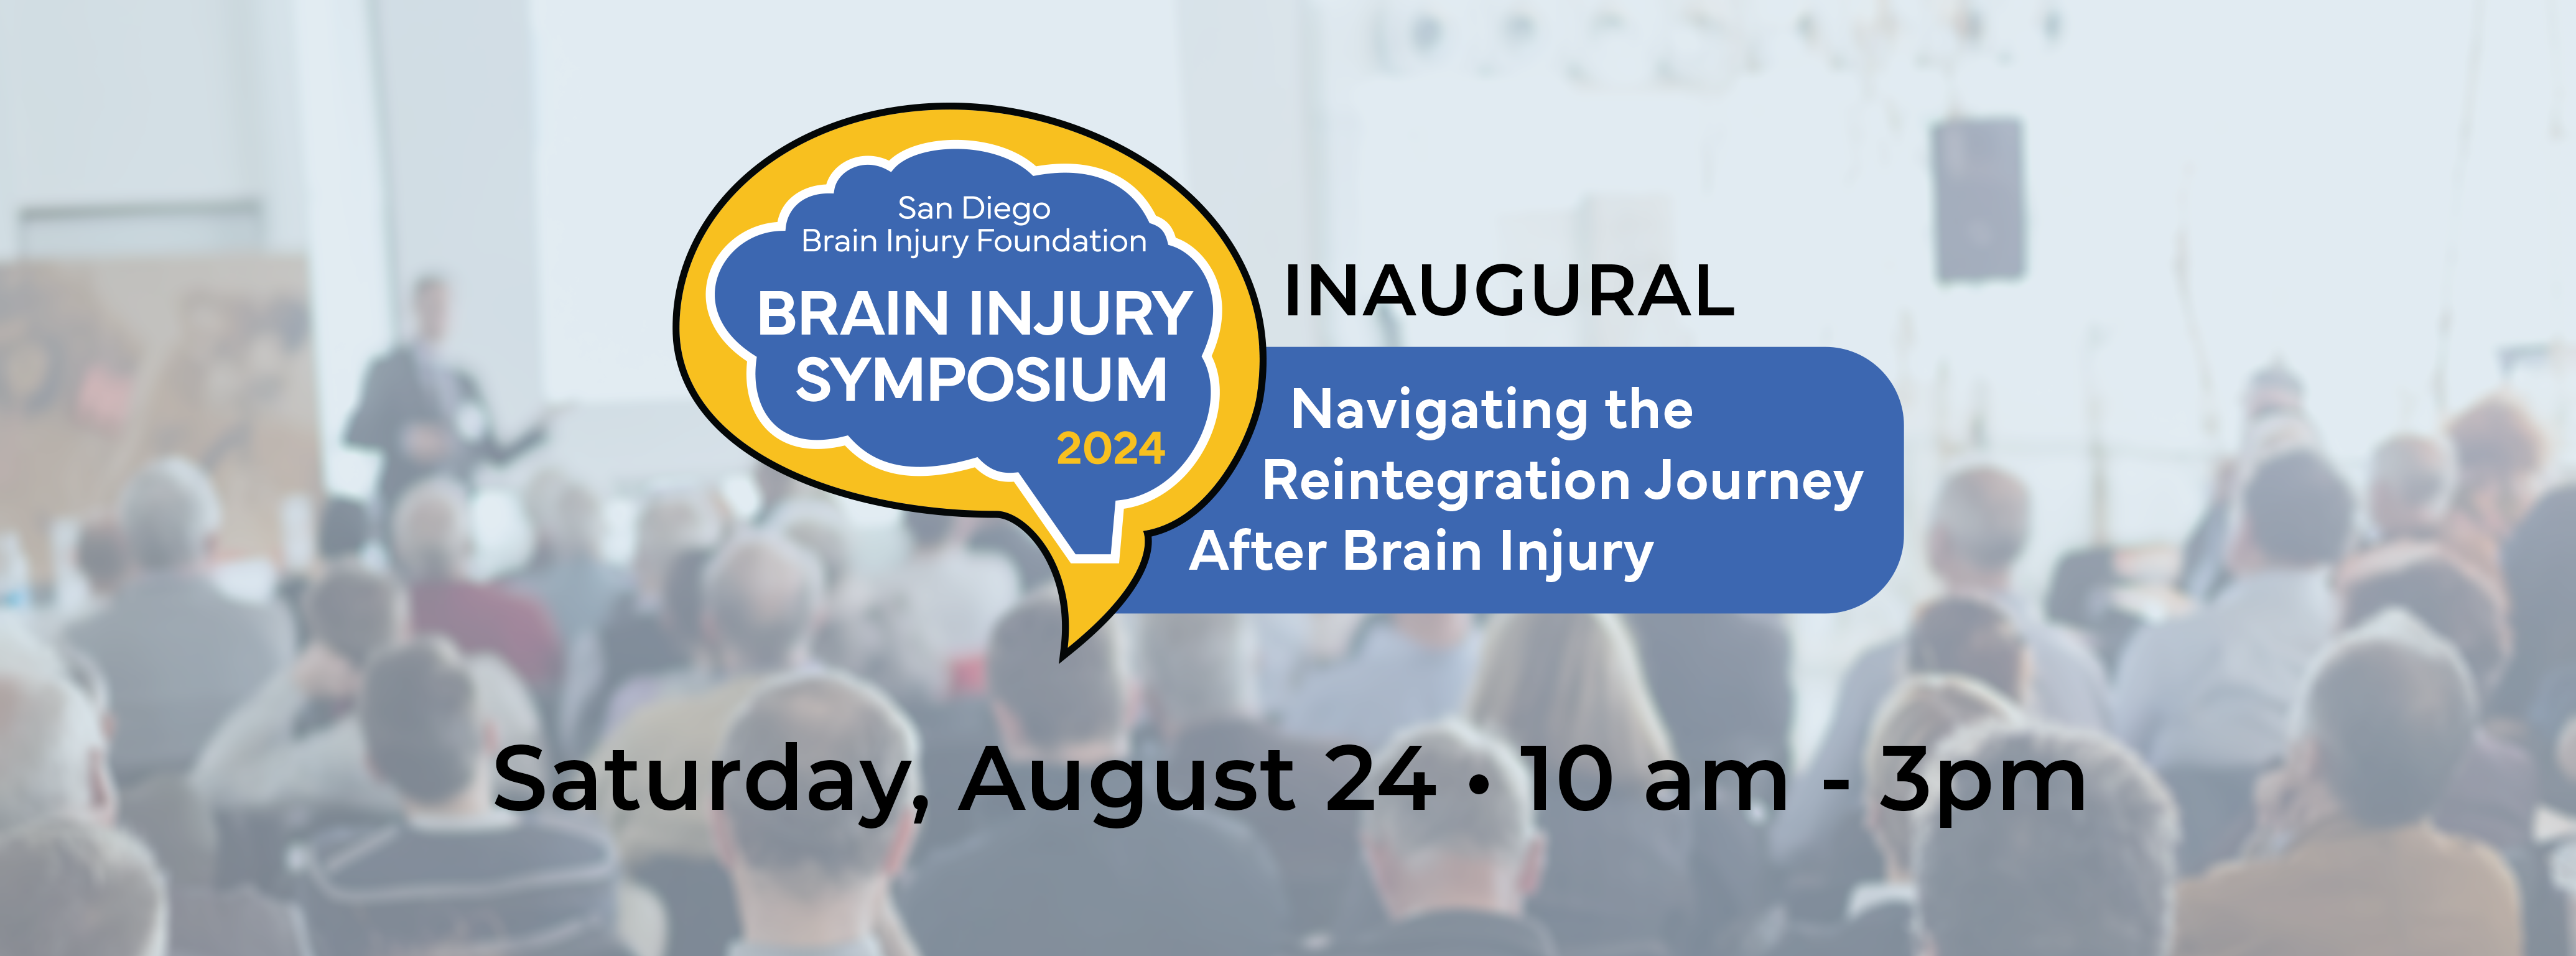 SDBIF Brain injury symposium saturday july 13 website event banner